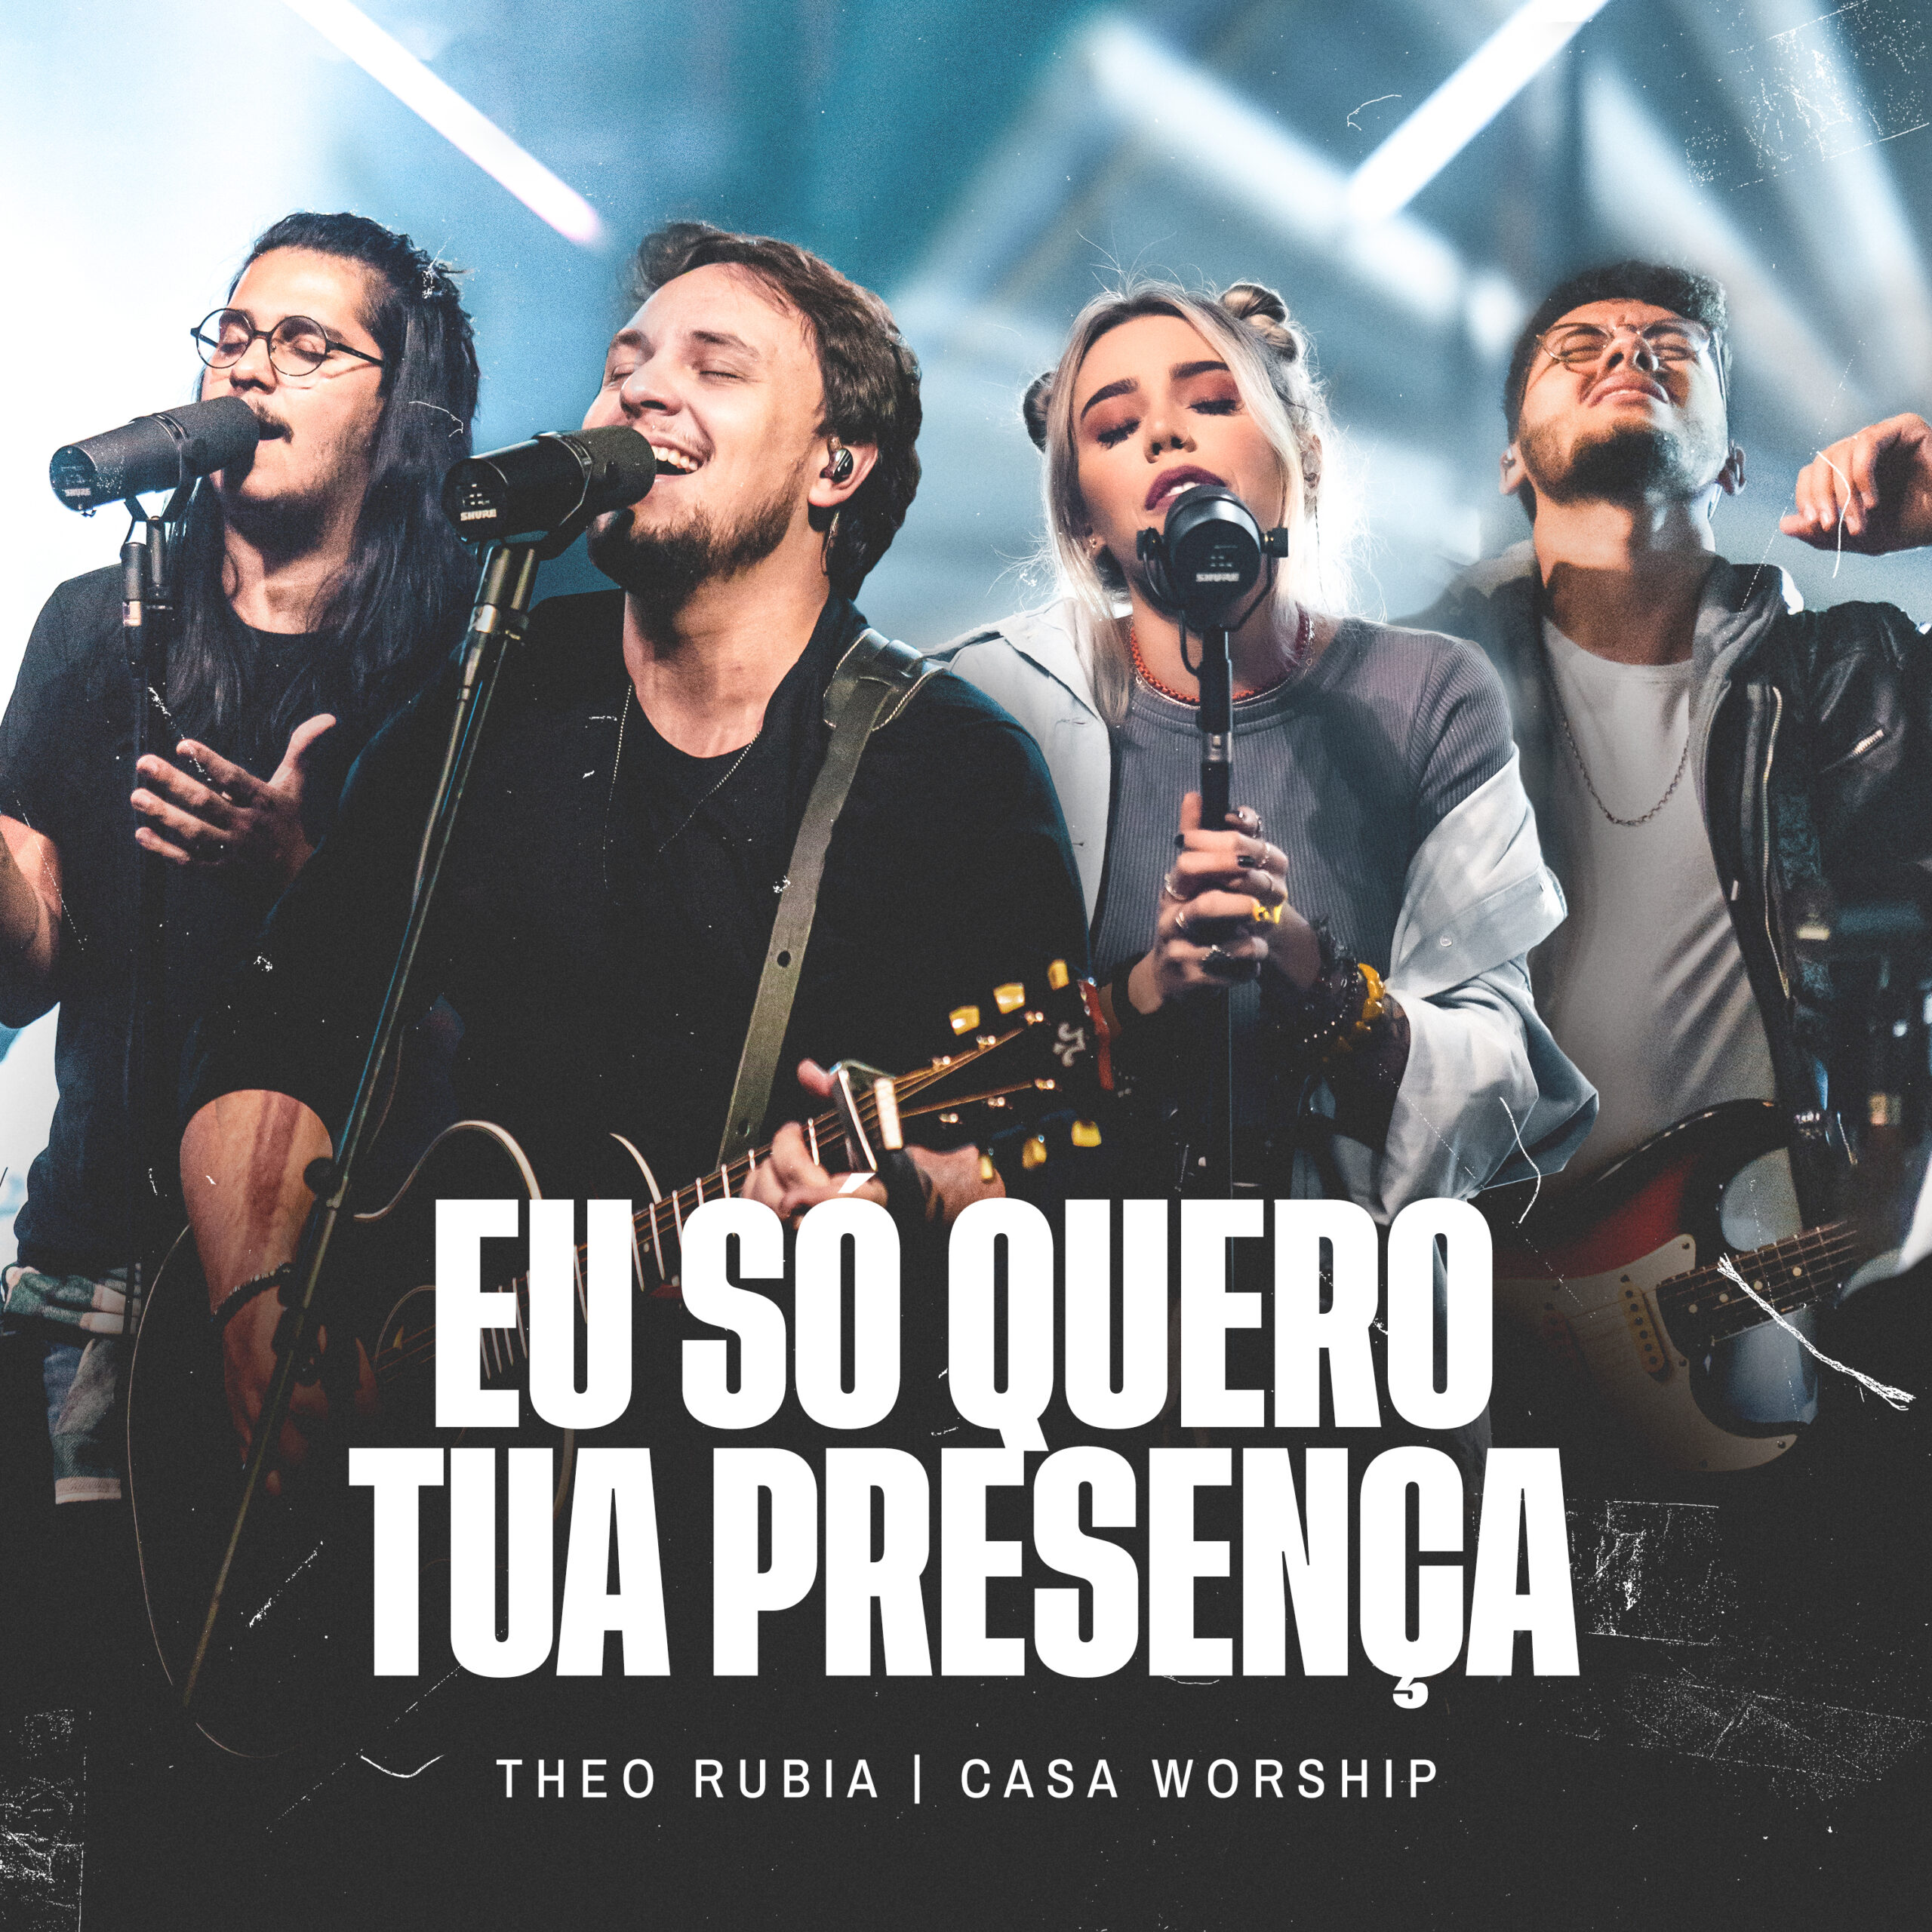 Theo Rubia lança o single “Eu Só Quero Tua Presença” com participação do Casa Worship